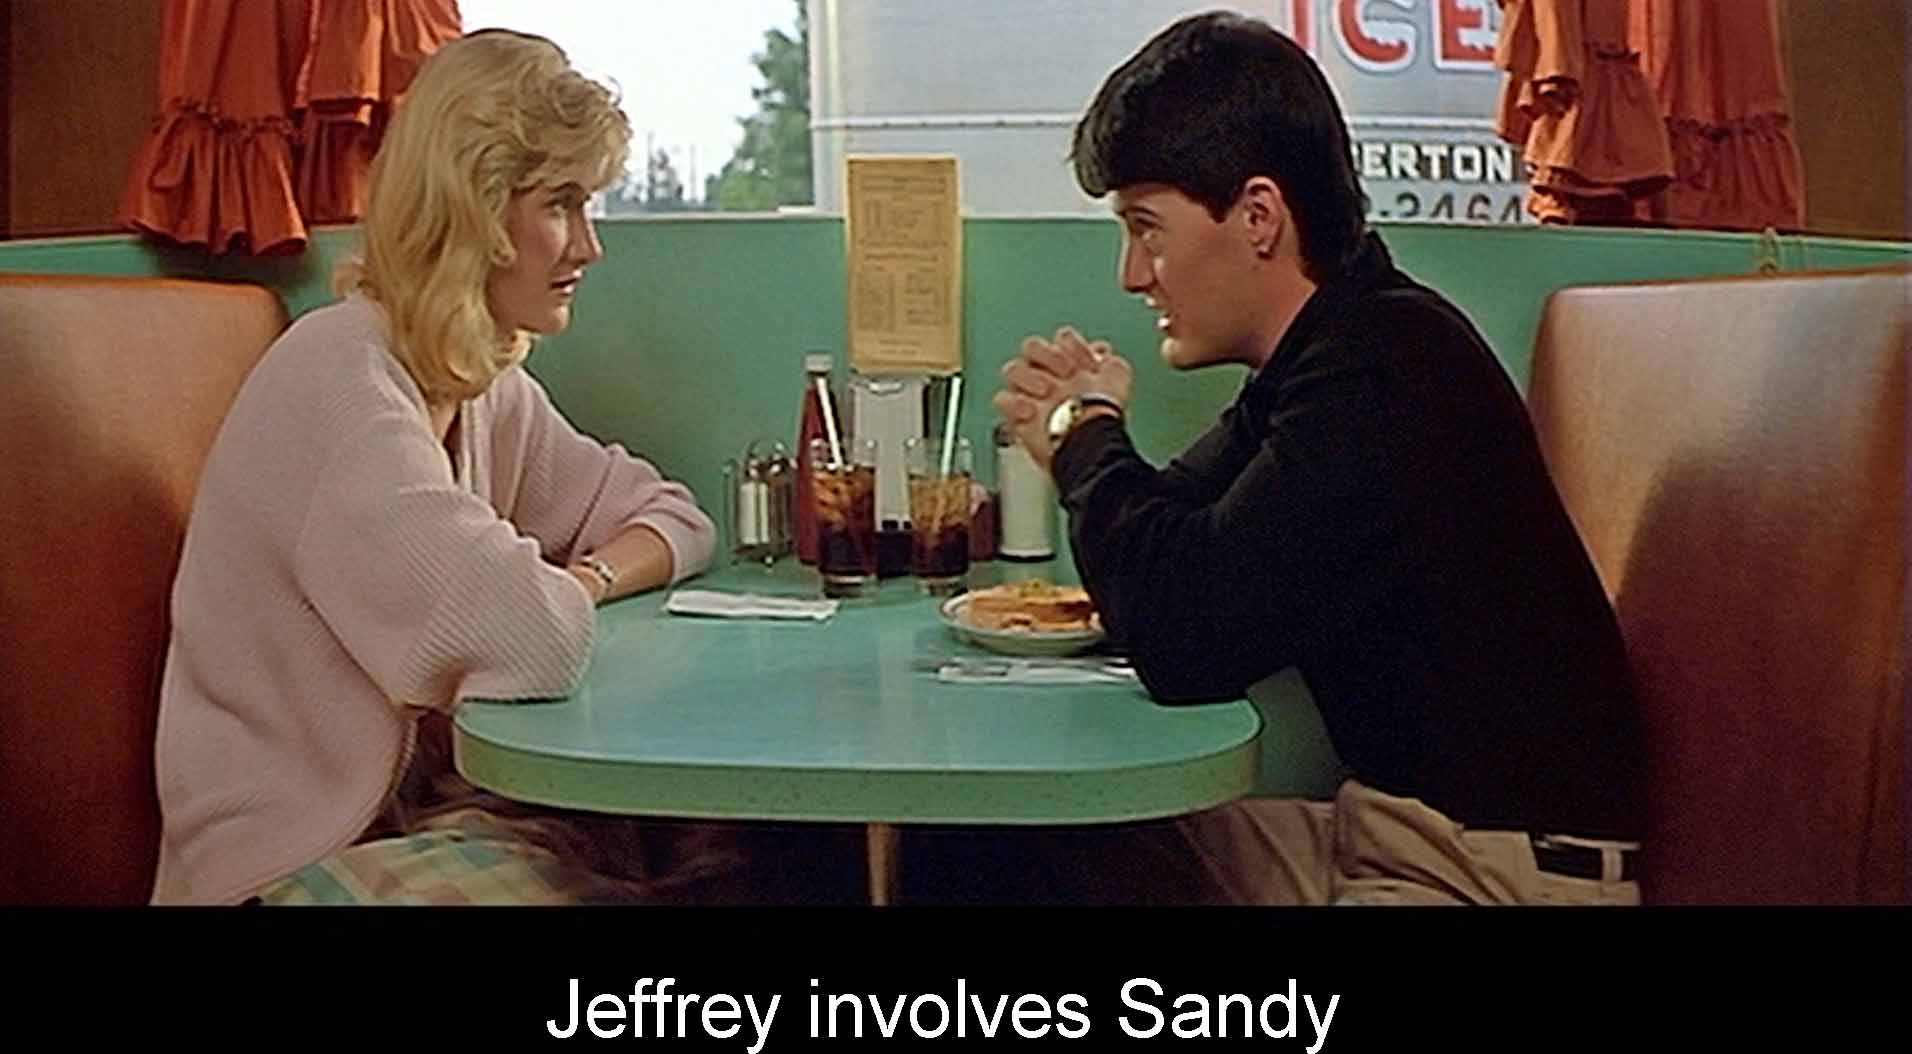 Jeffrey involves Sandy